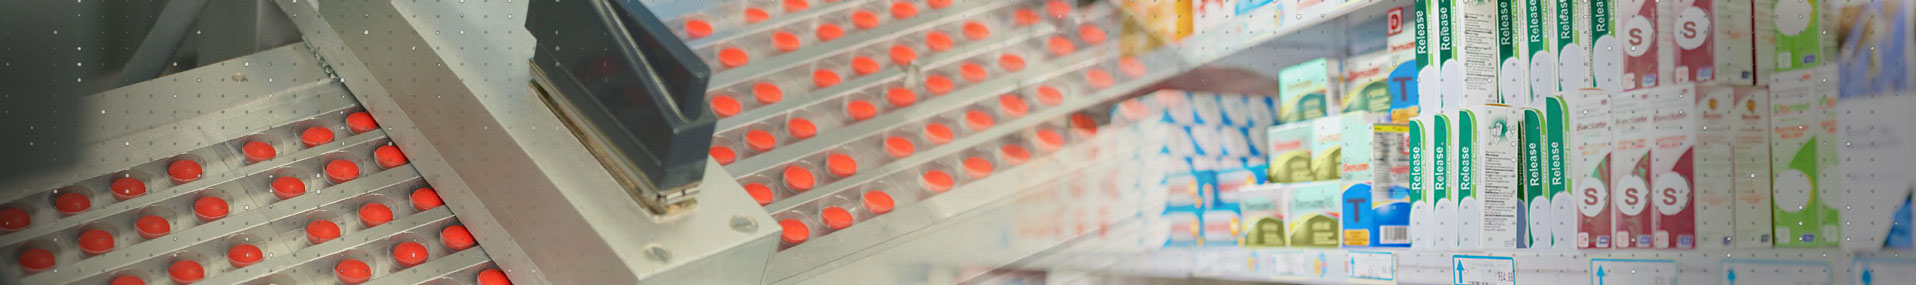 药物药片在生产和盒装架子上